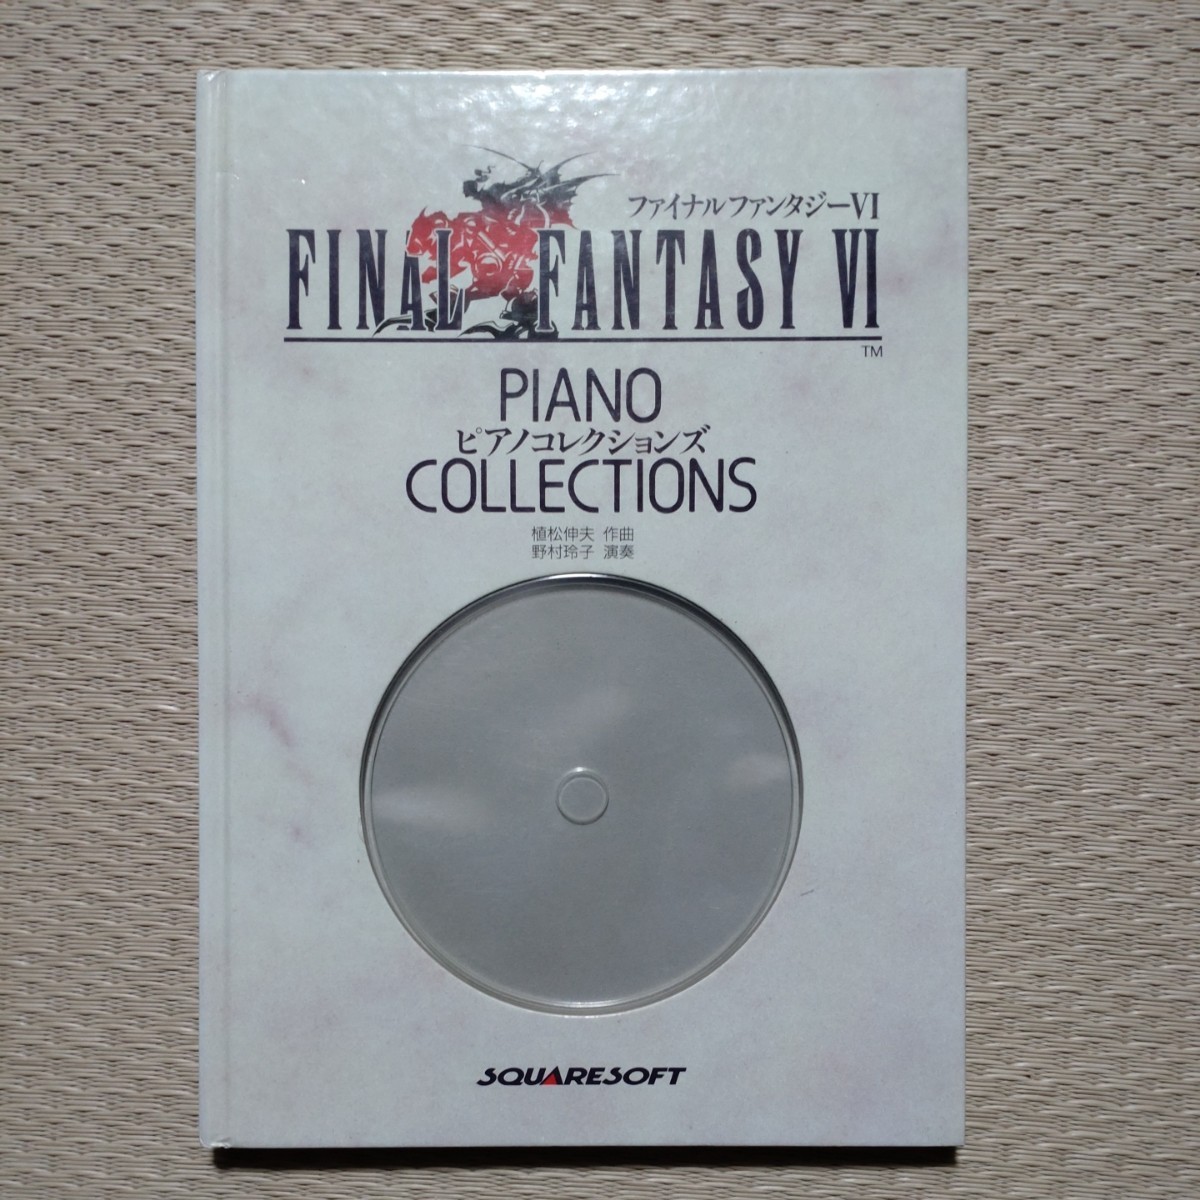 ピアノコレクションズ ファイナルファンタジー6 Piano Collections FINAL FANTASY Ⅵ Score 楽譜のサムネイル